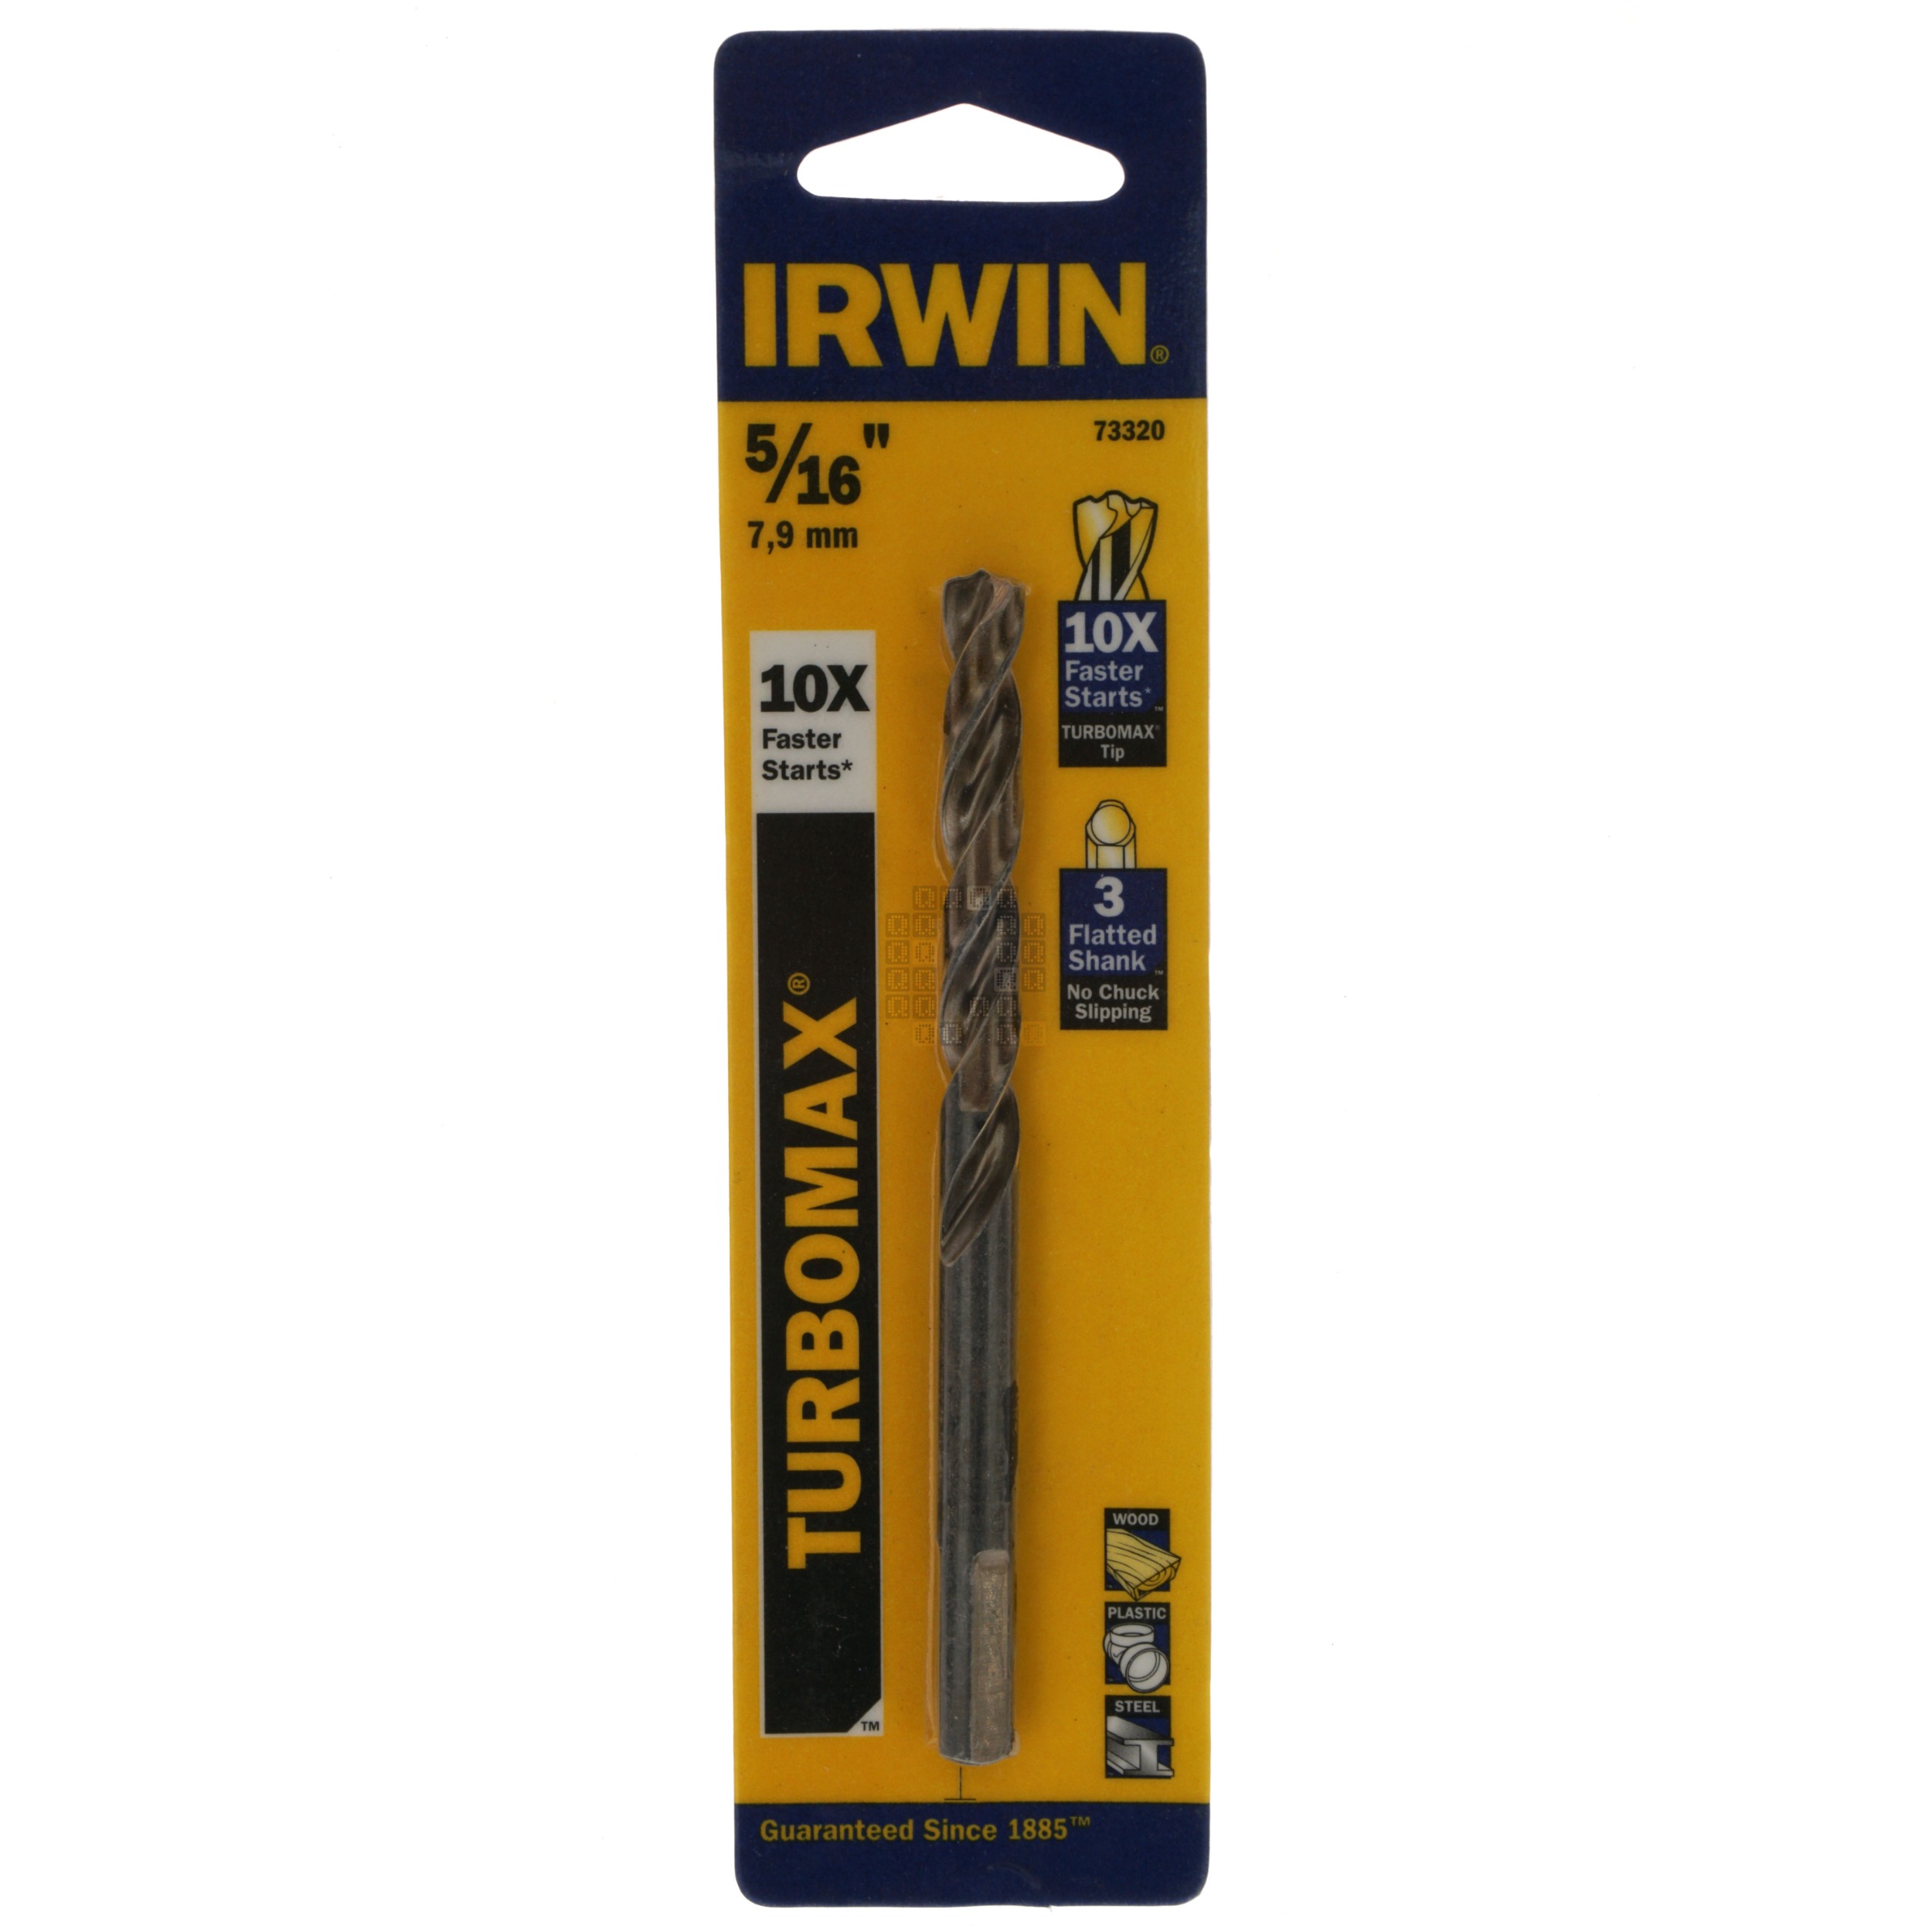 Irwin Industrial Tools 73320 Turbomax 5/16" Drill Bit